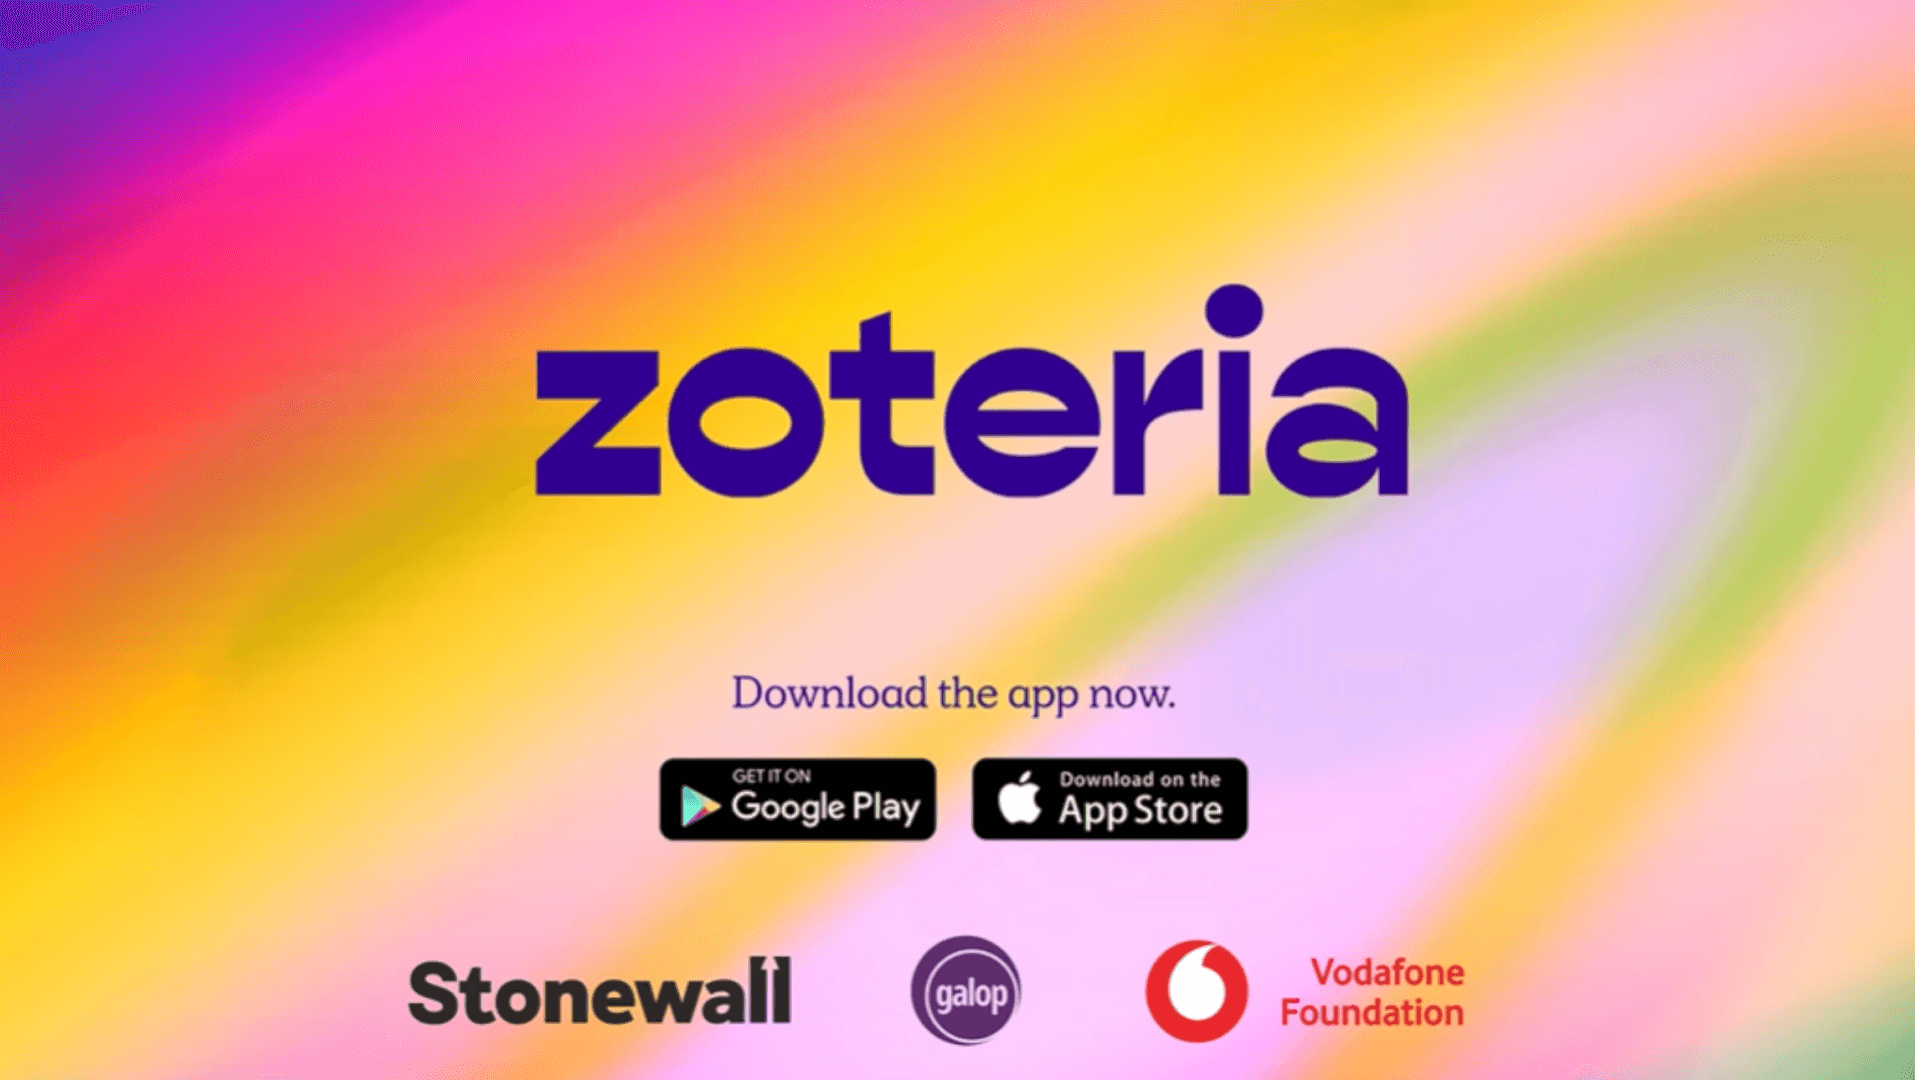 Zoteria logo with rainbow background